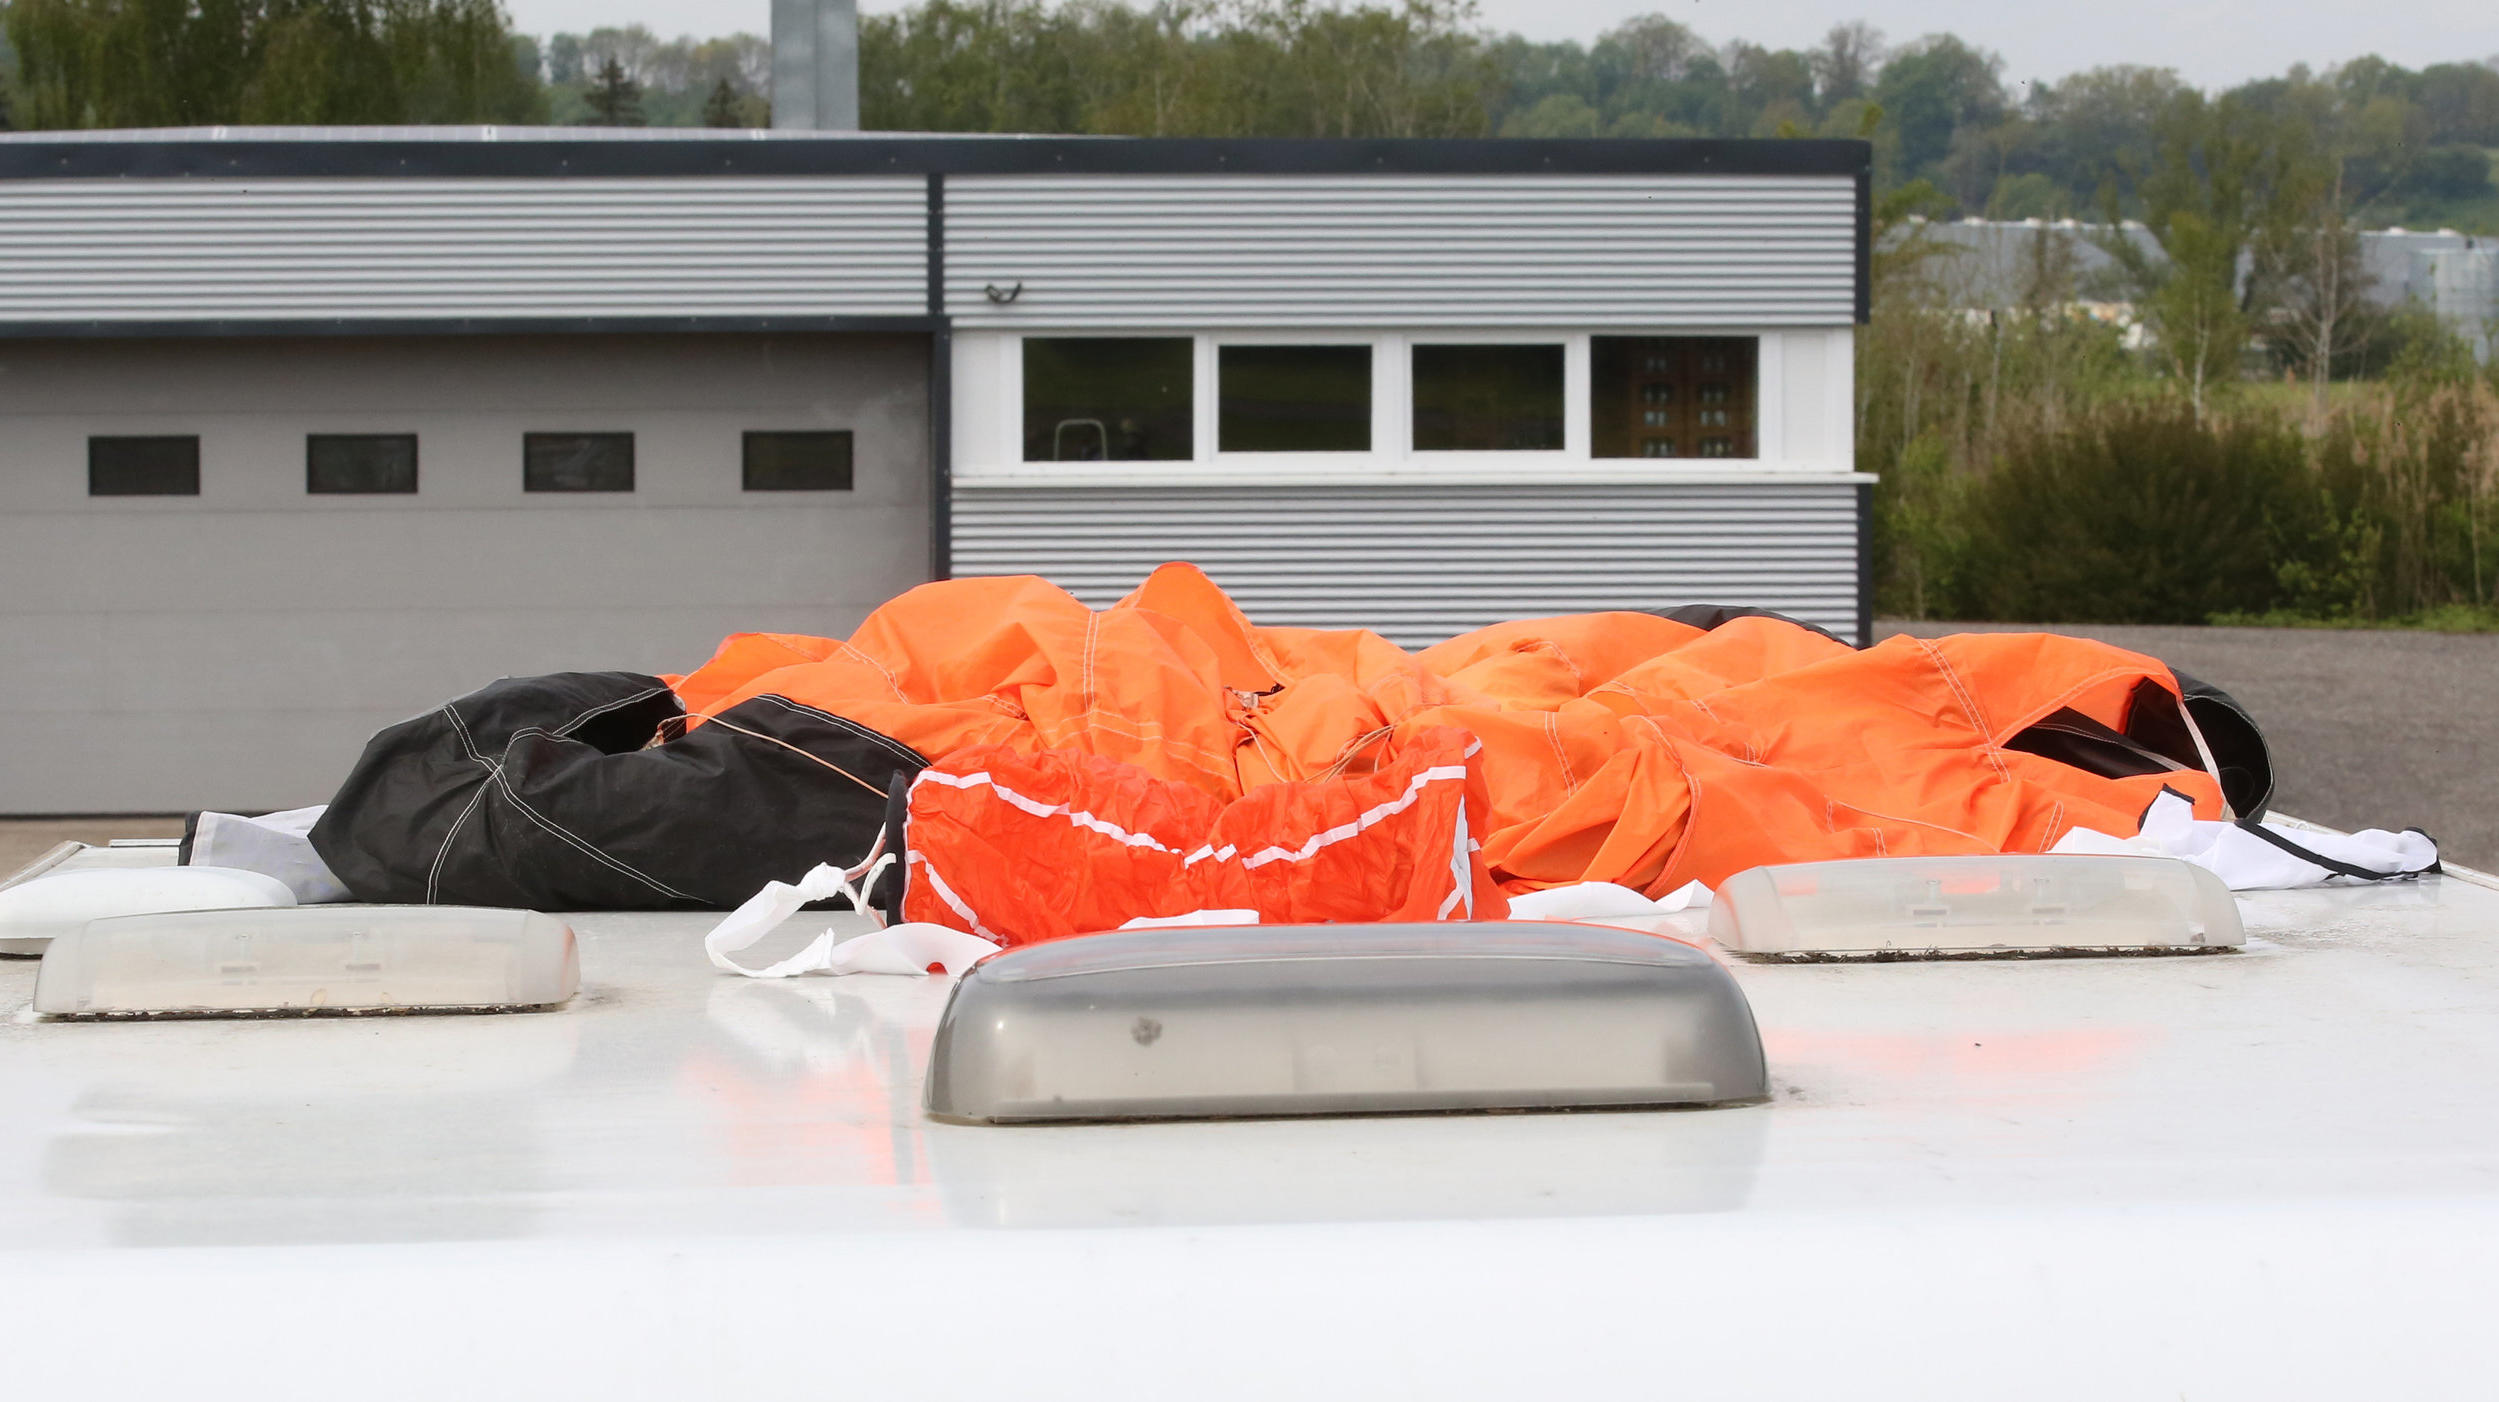 18.05.2019, Baden-Württemberg, Bad Saulgau: Der Fallschirm eines der Verunglückten, so die Einsatzkräfte, liegt auf dem Dach eines Wohnmobiles auf dem Parkplatz am Flugplatz. Am Morgen sind dort zwei Fallschirmspringer bei einem Sprung tödlich verlet